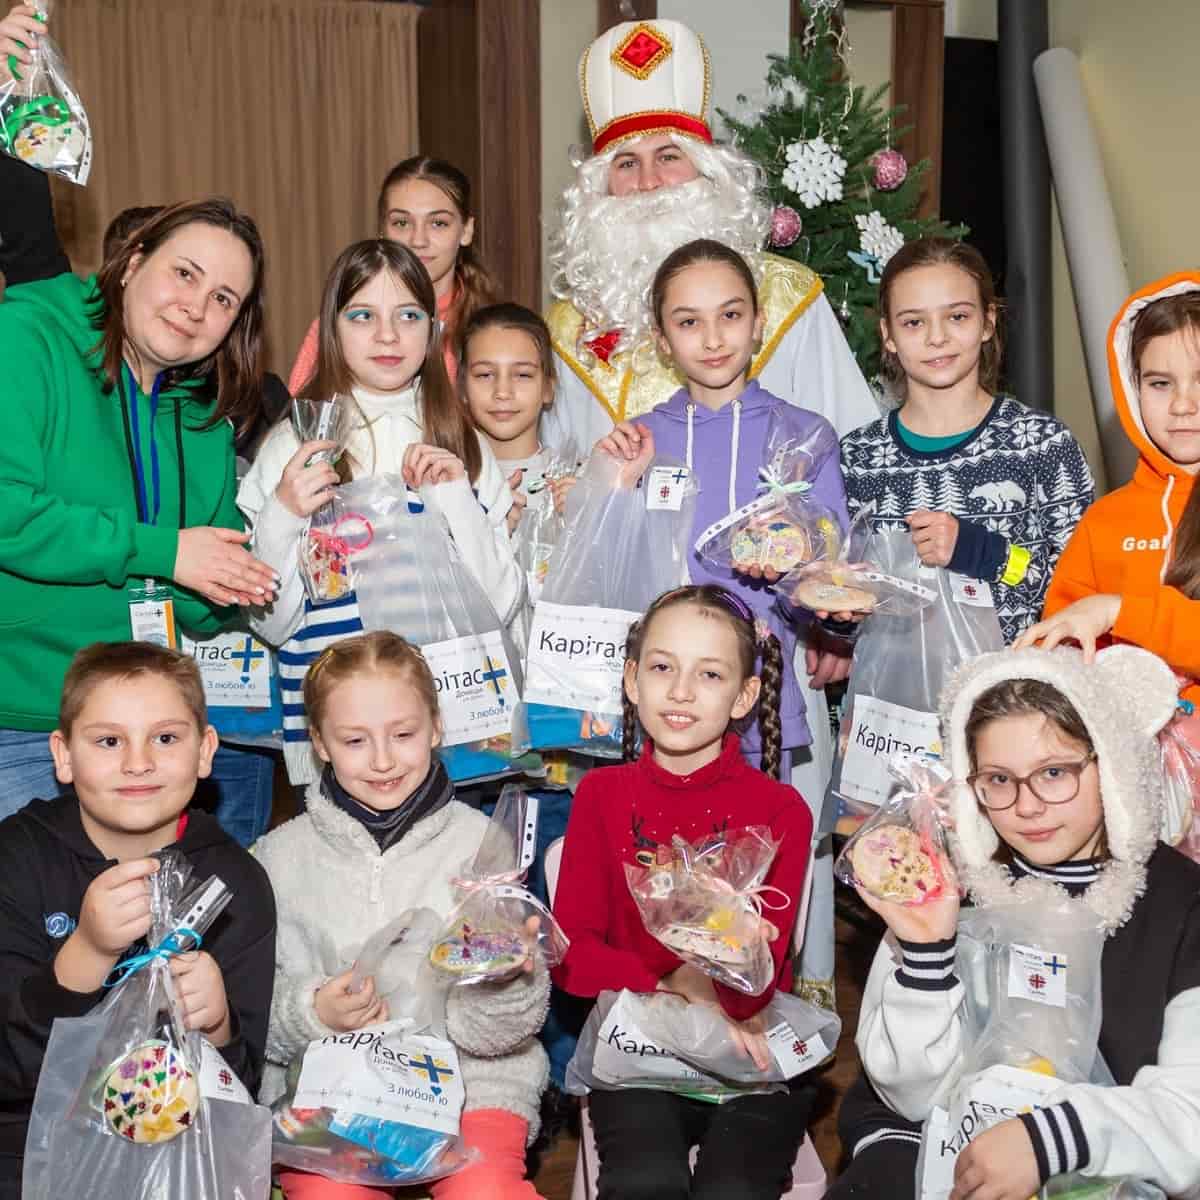 Pese a la guerra, San Nicolás ha traído regalos navideños a los niños a través de Cáritas Ucrania